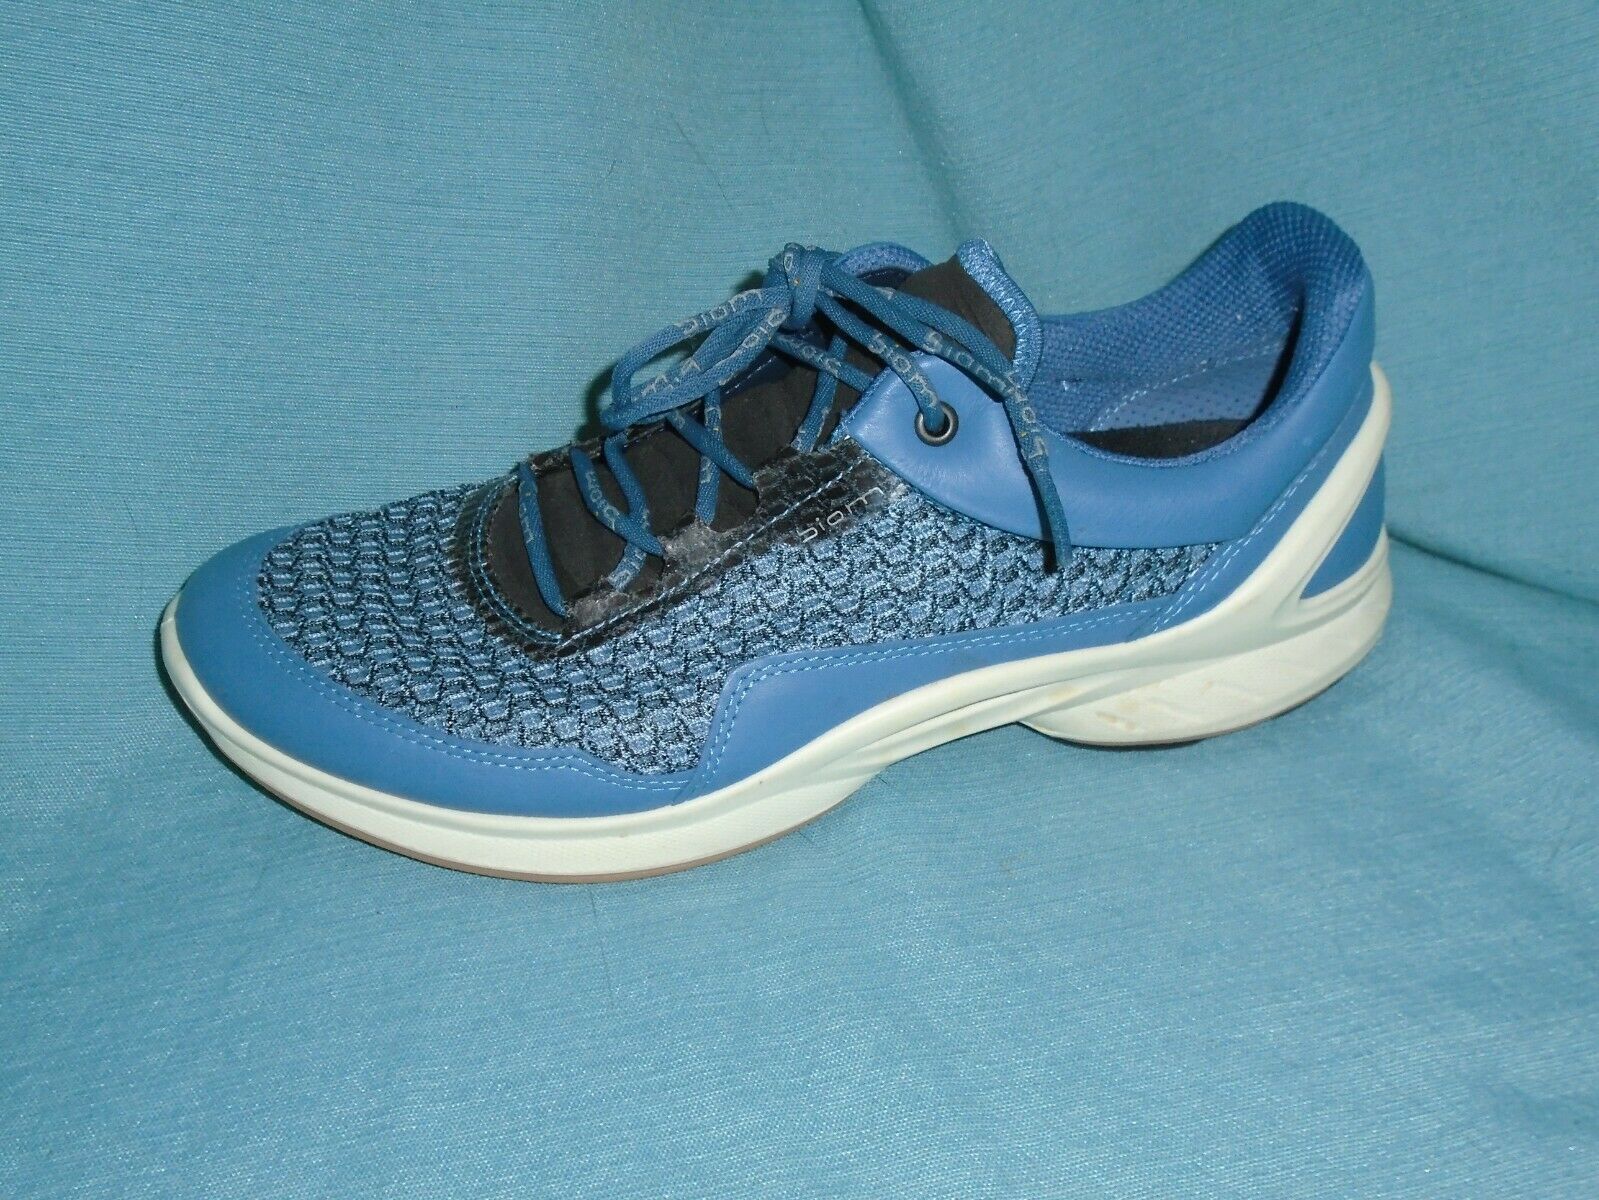 ECCO Women's Biom Fjuel Outdoor Shoes Retro Athletic Sneakers Blue Sz 8.5 / 39